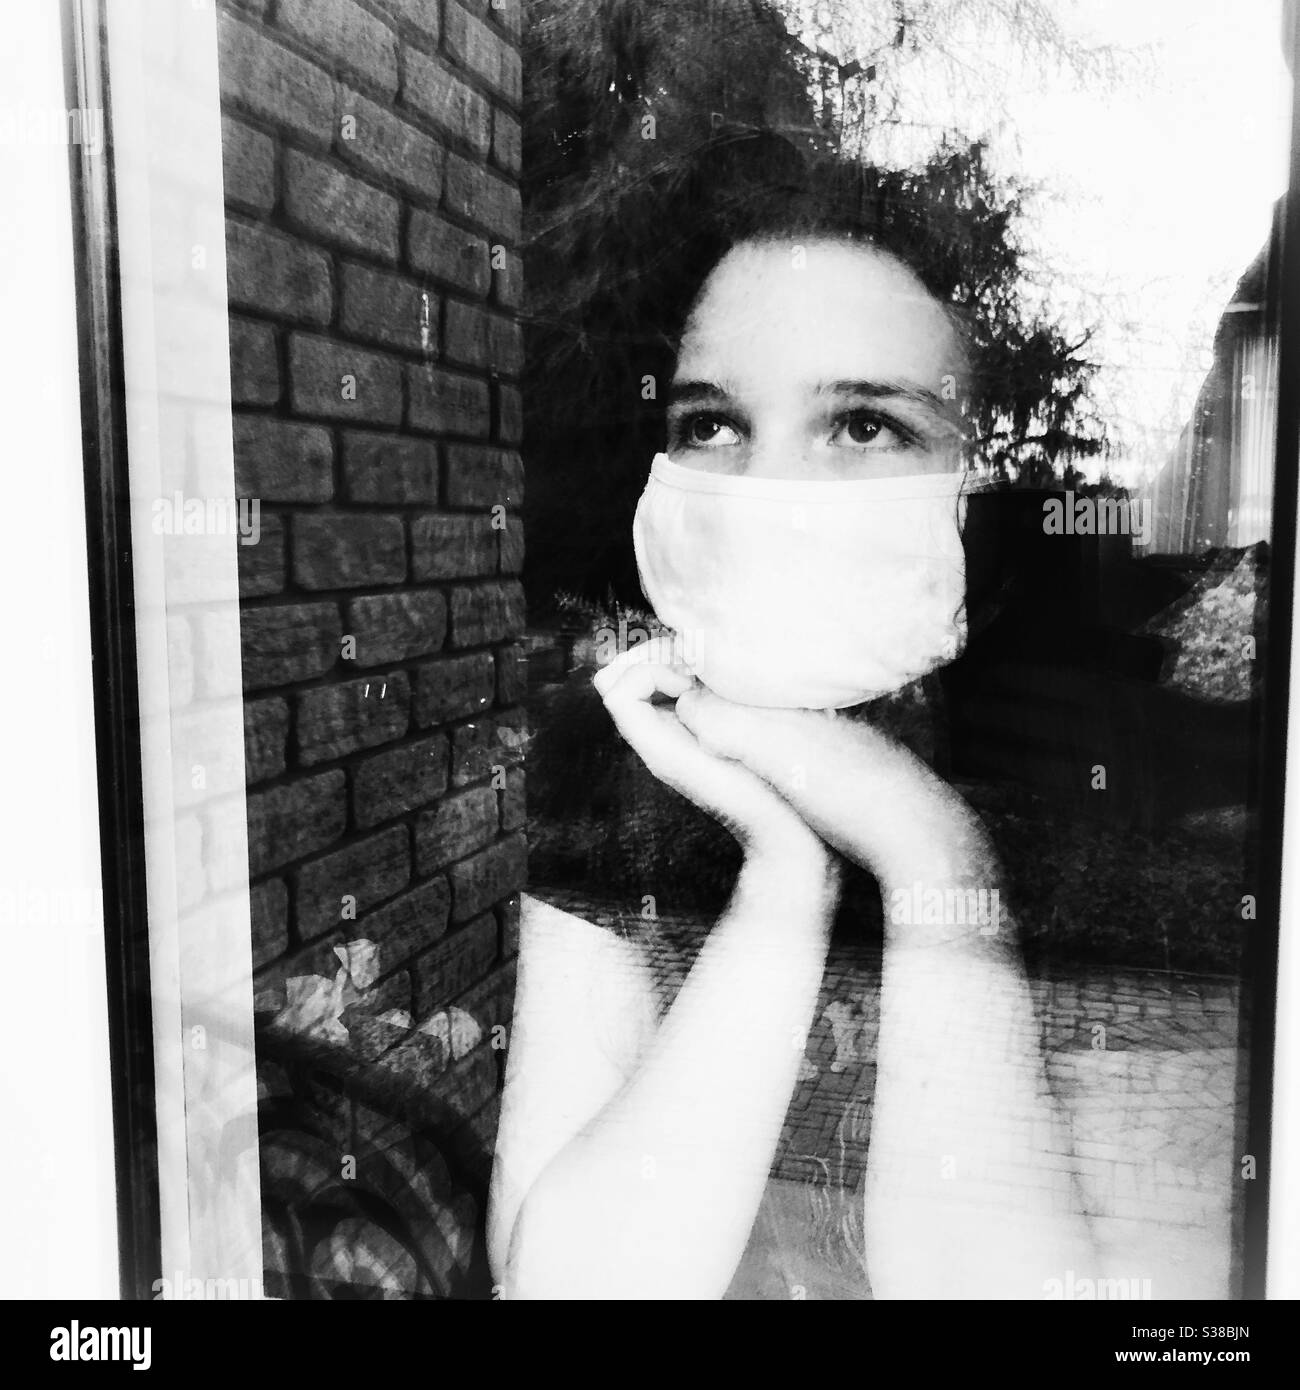 Teen ragazza indossando maschera bianca che guarda fuori la finestra della casa Foto Stock